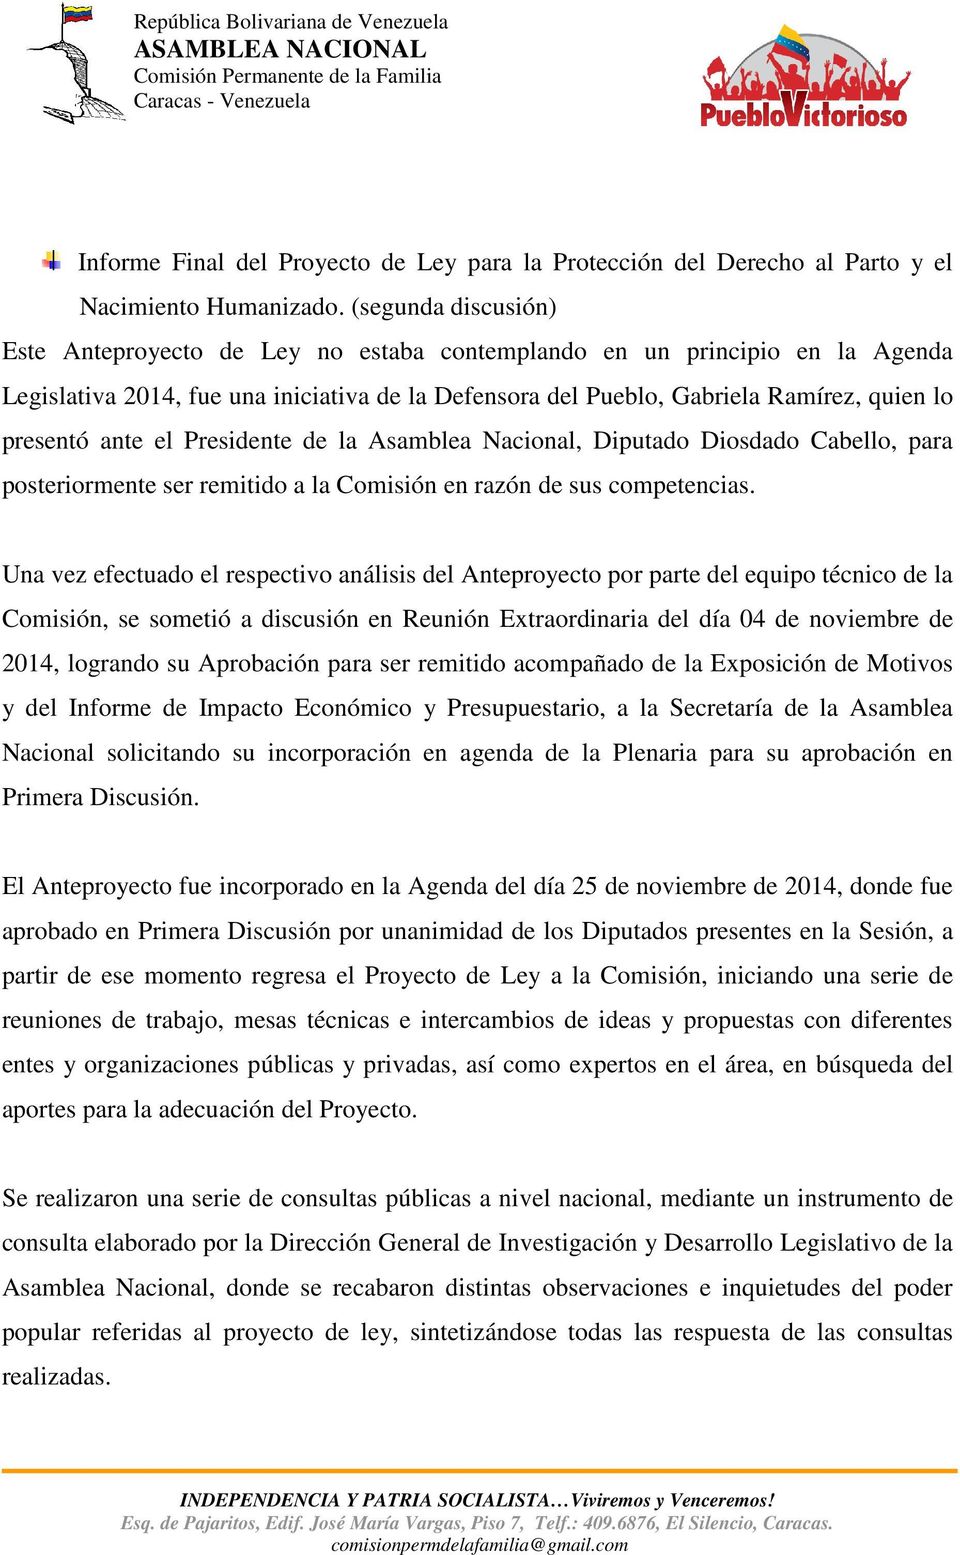 ante el Presidente de la Asamblea Nacional, Diputado Diosdado Cabello, para posteriormente ser remitido a la Comisión en razón de sus competencias.